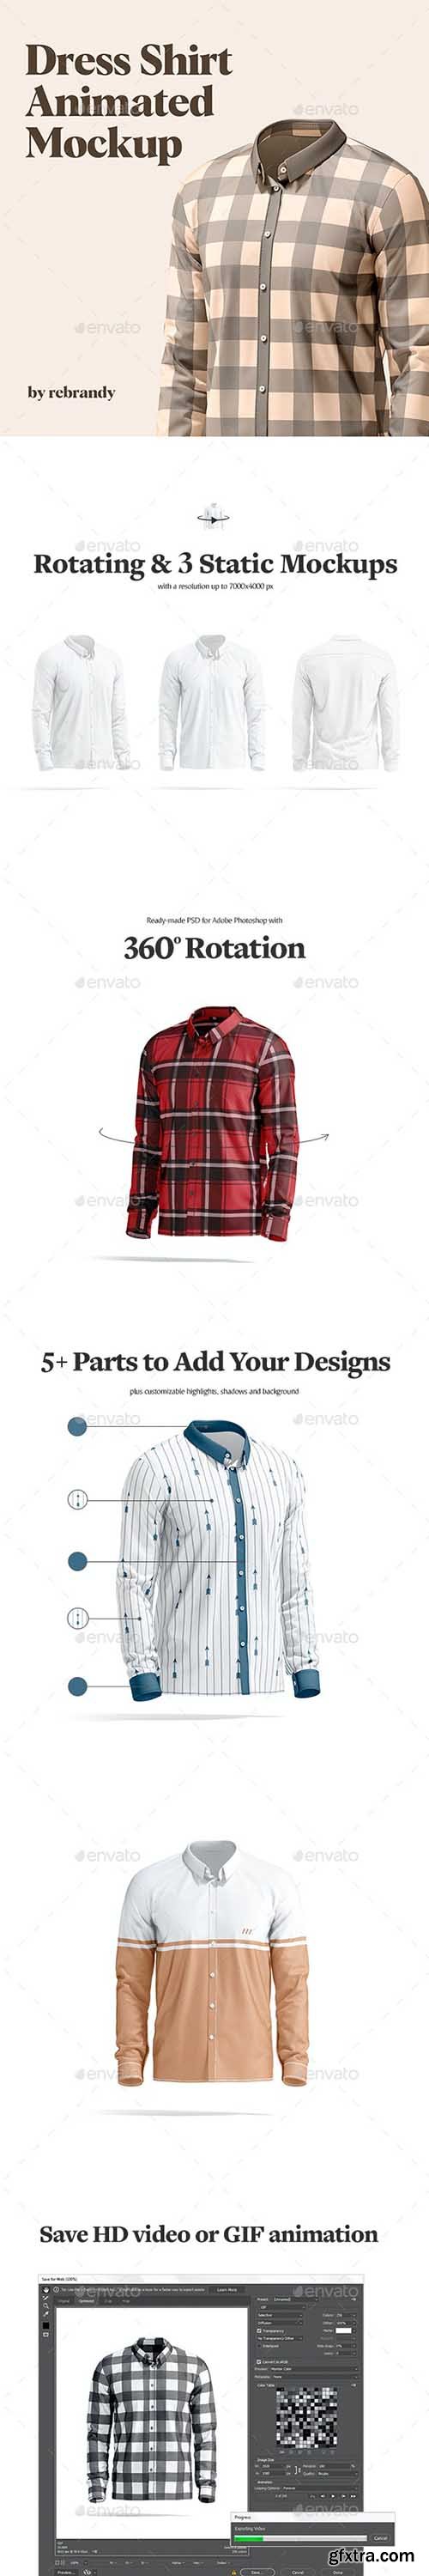 GraphicRiver - Dress Shirt Animated Mockup 35015848